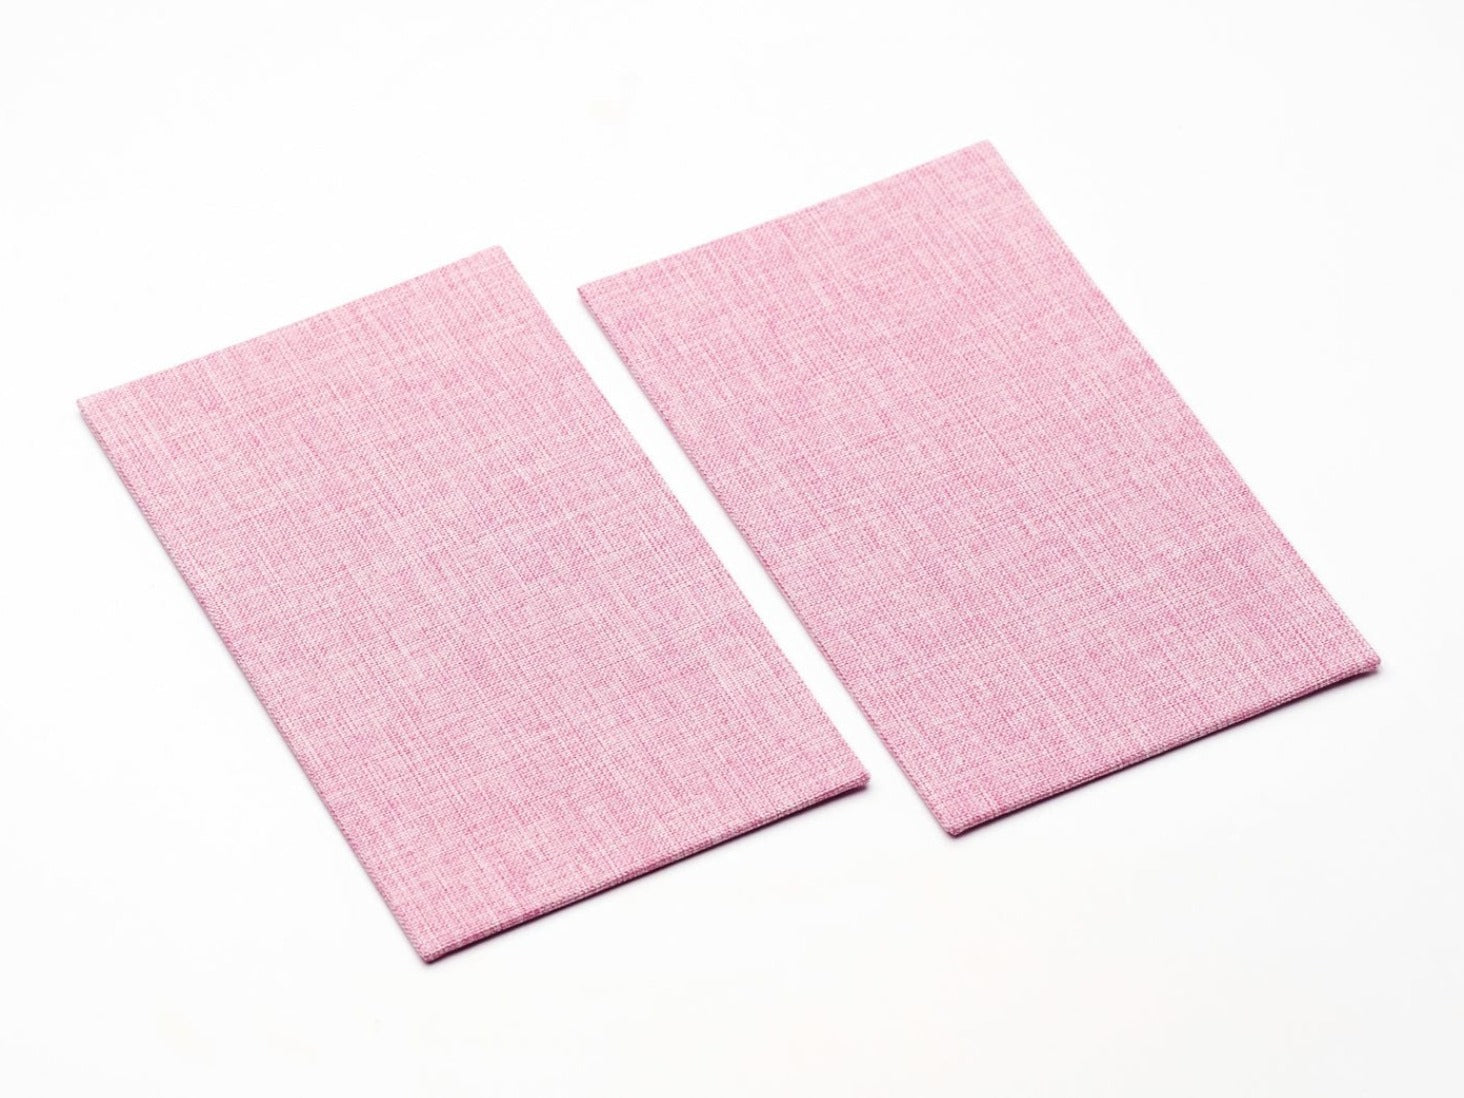 Sample Rose Pink Linen FAB Sides® - A5 Deep